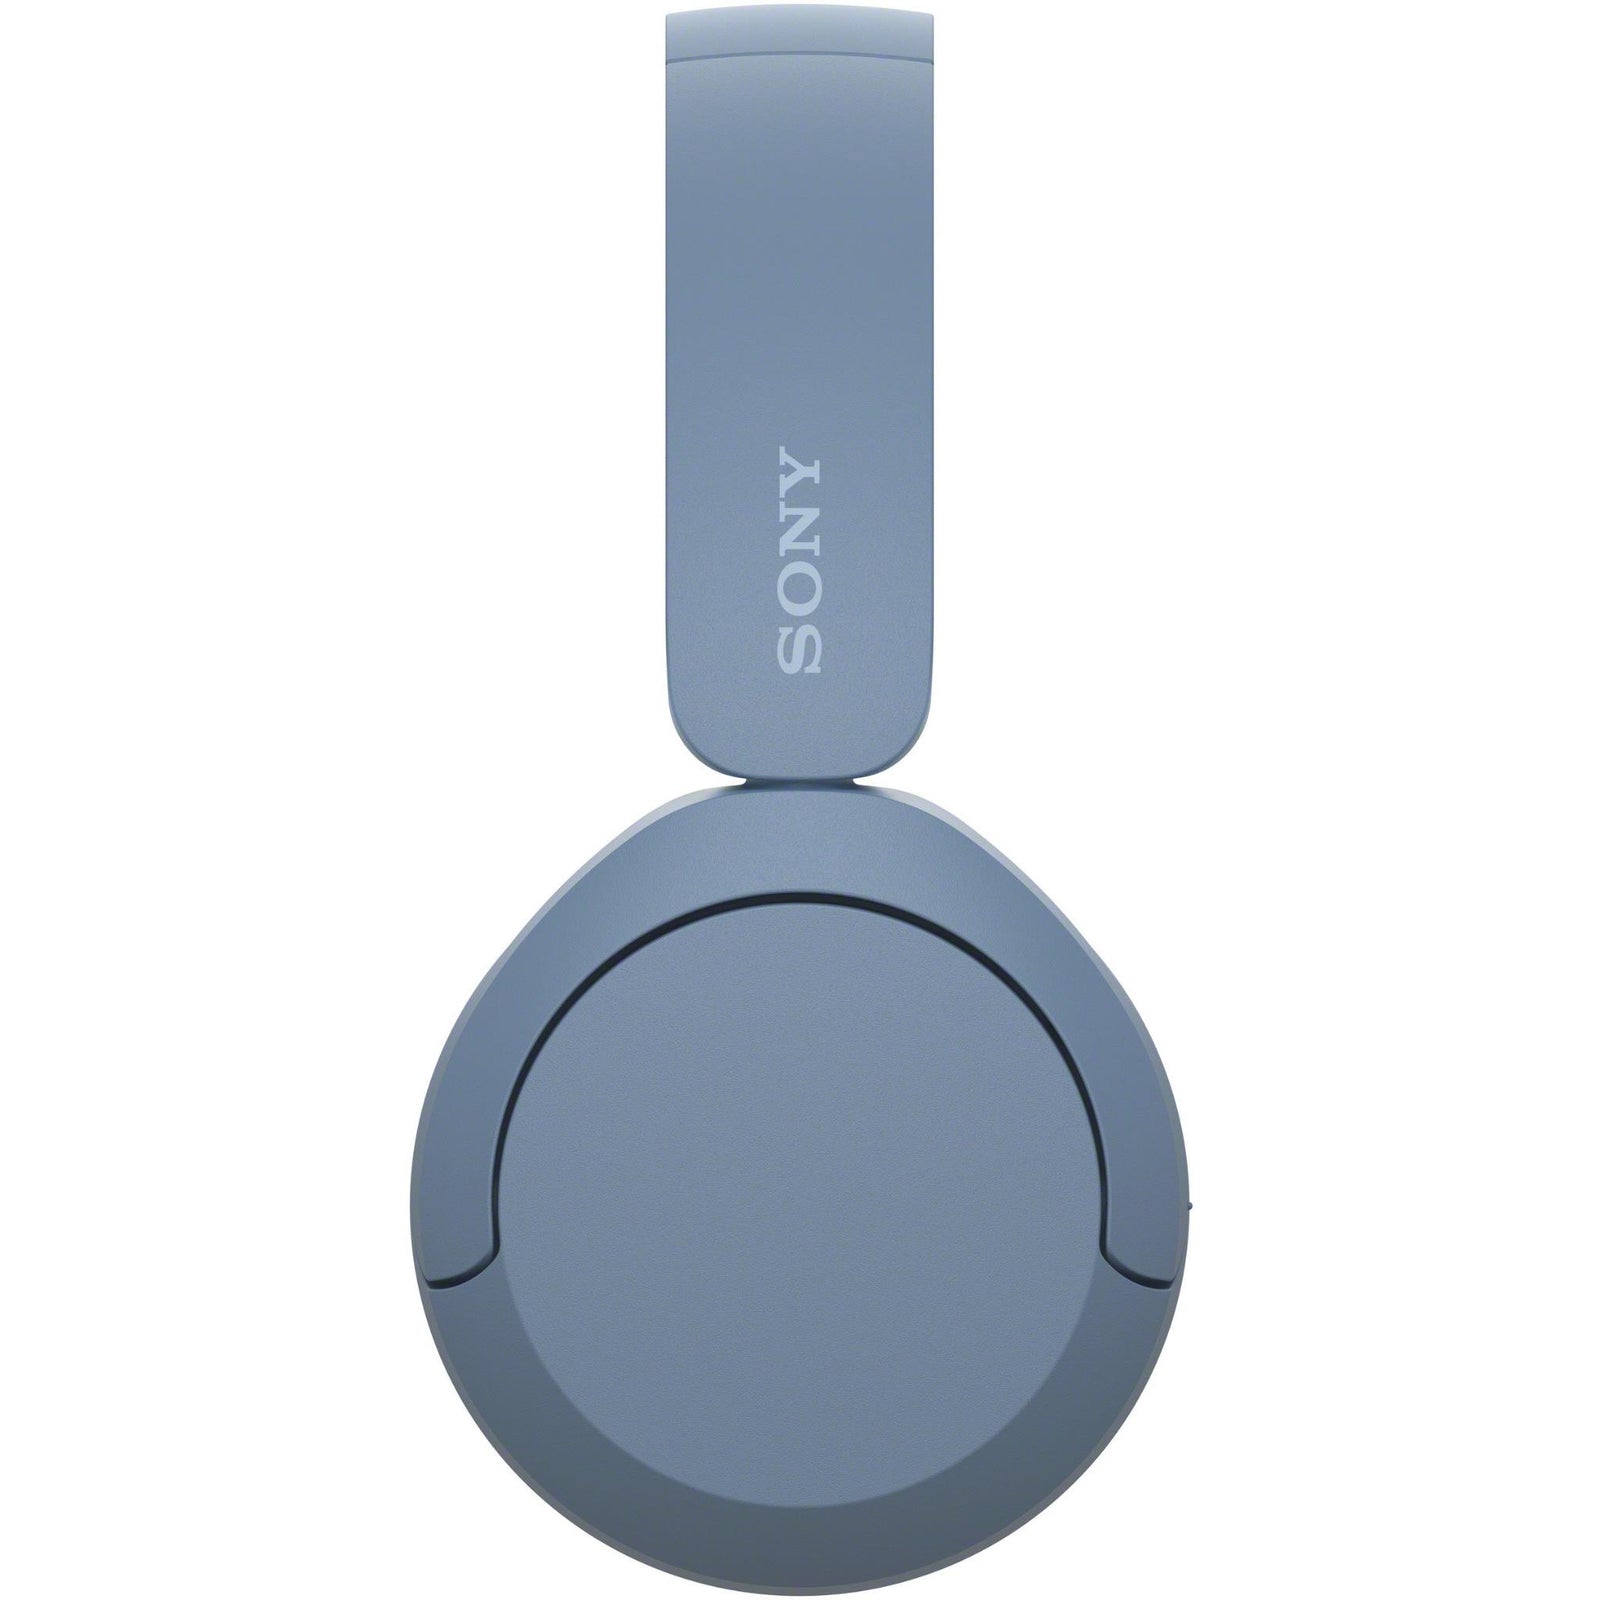 Sony Wireless On-Ear Headphones (Blue)